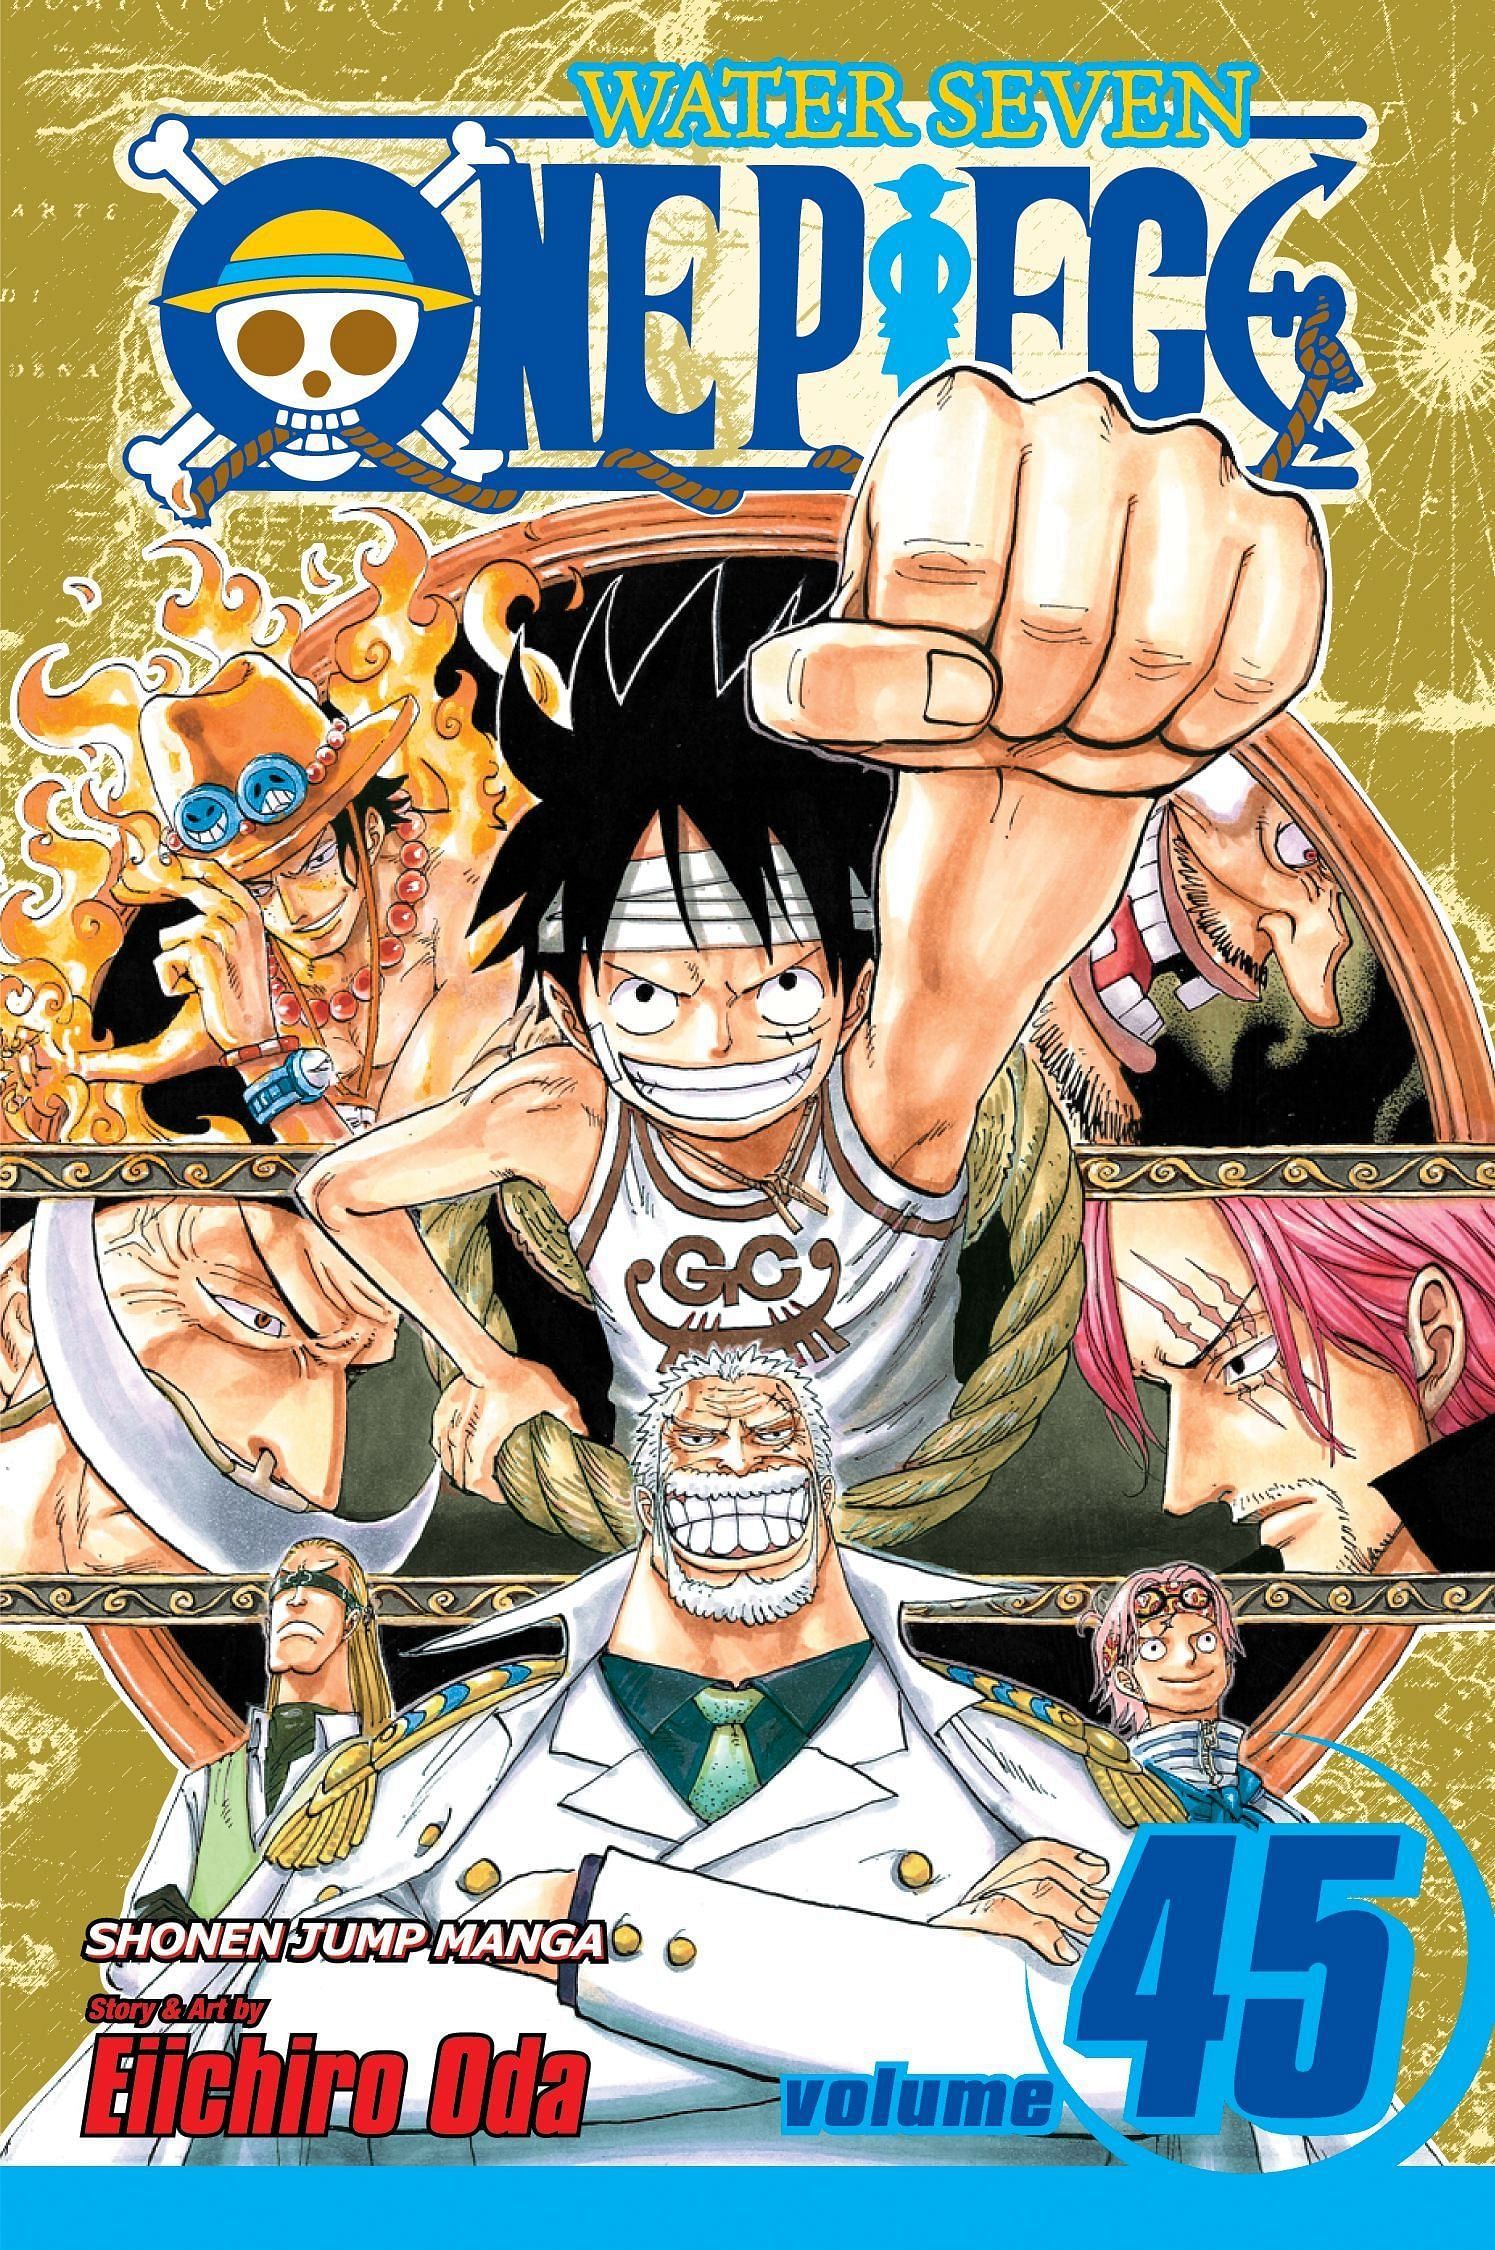 The cover art for One Piece Volume 45 (Image via Shueisha)